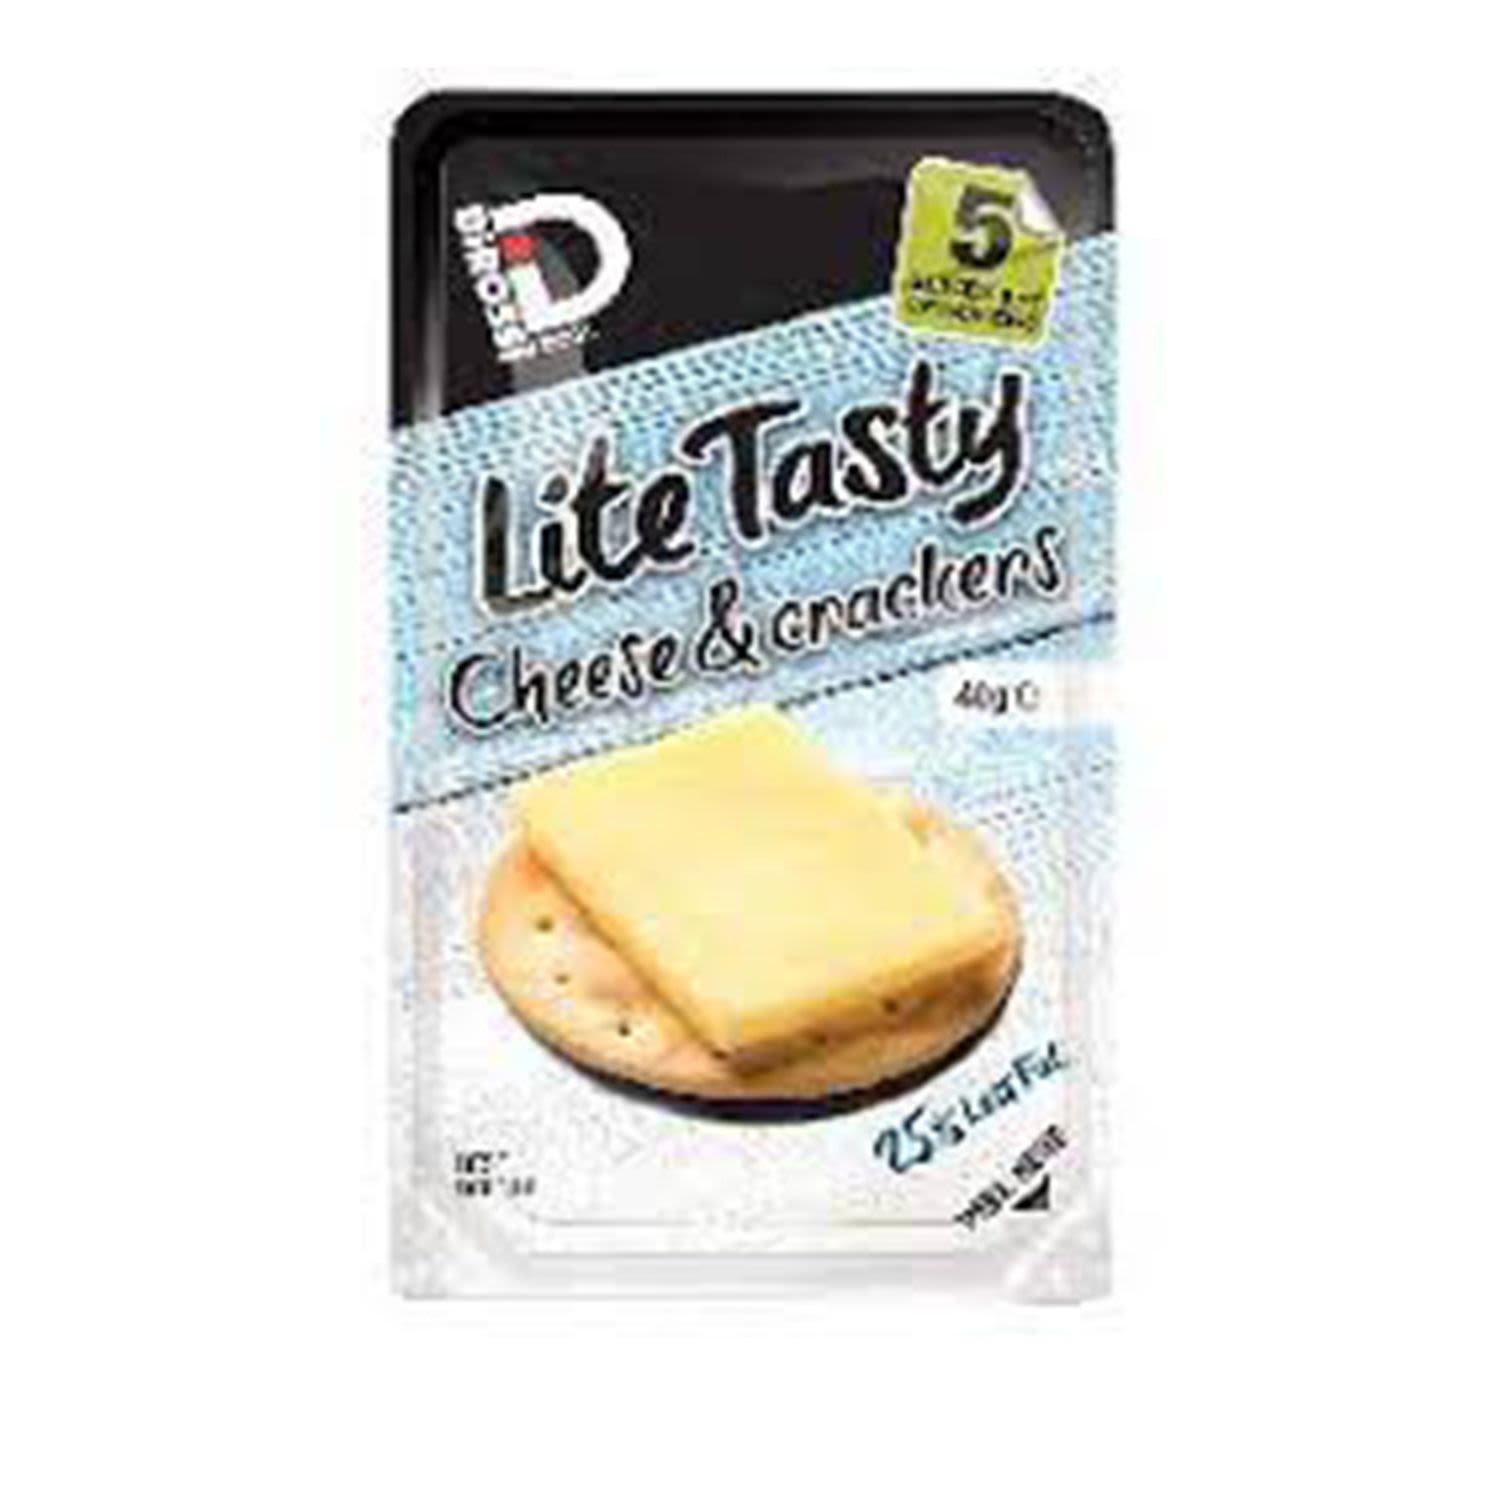 Dirossi Cheese And Cracker Tasty Lite, 40 Gram